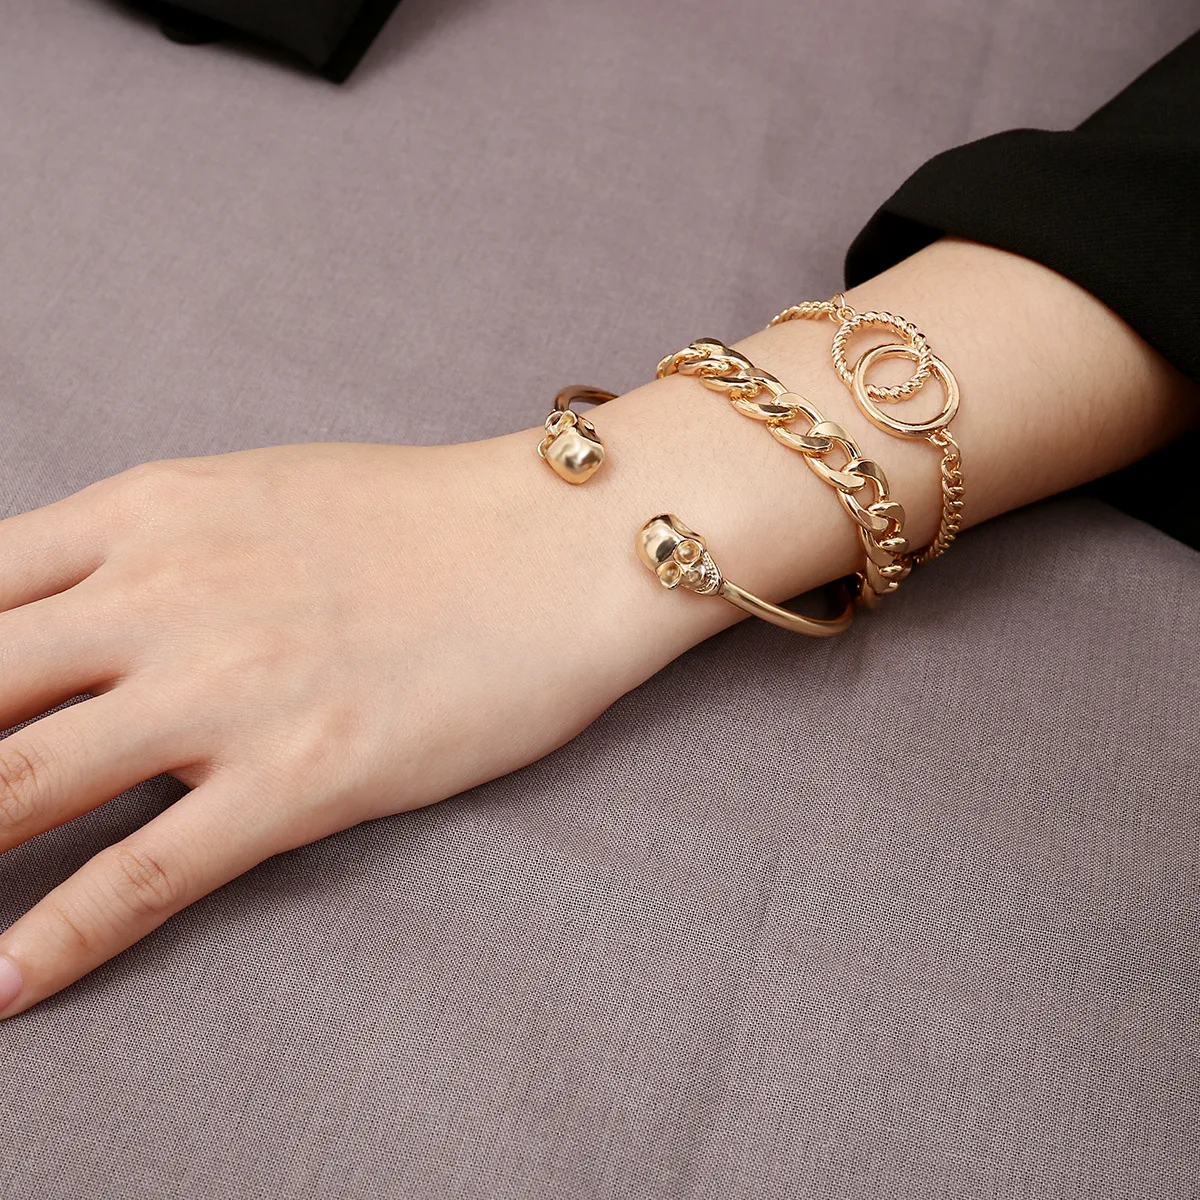 Несколько золотых браслетов на одной руке